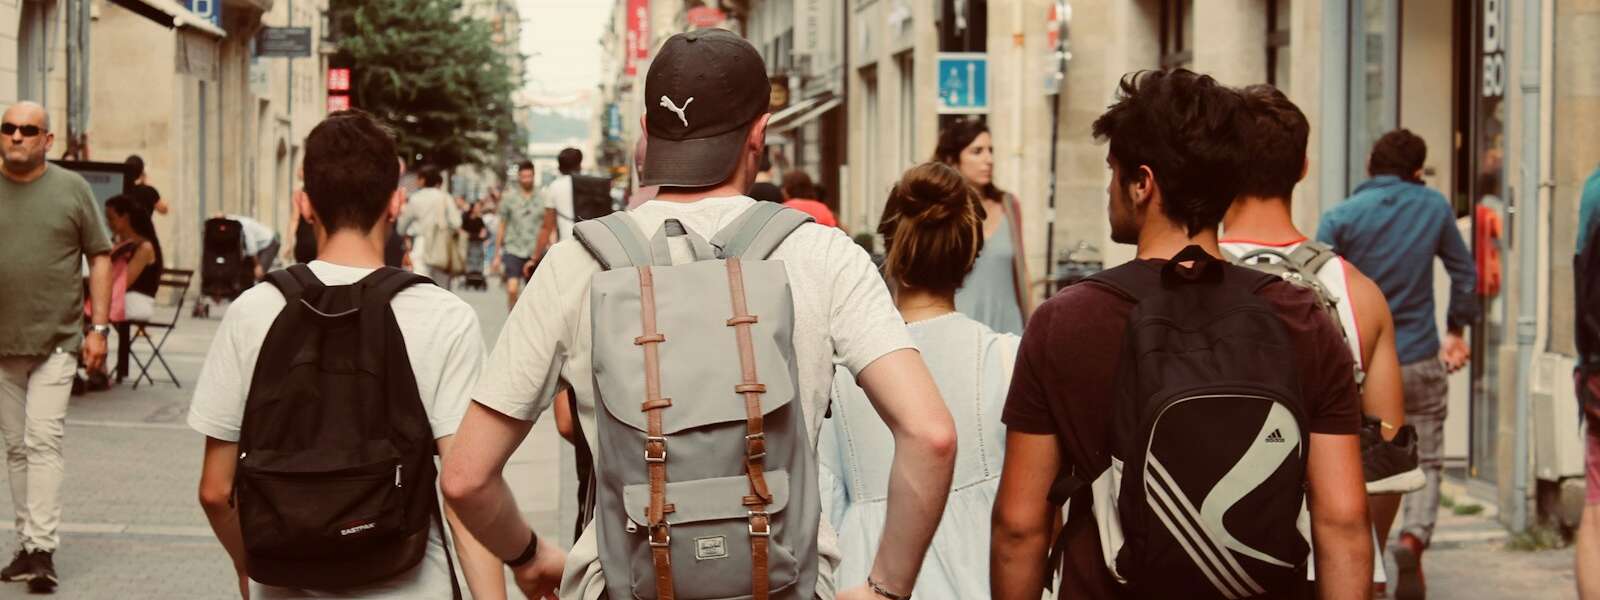 group of people walking on european street